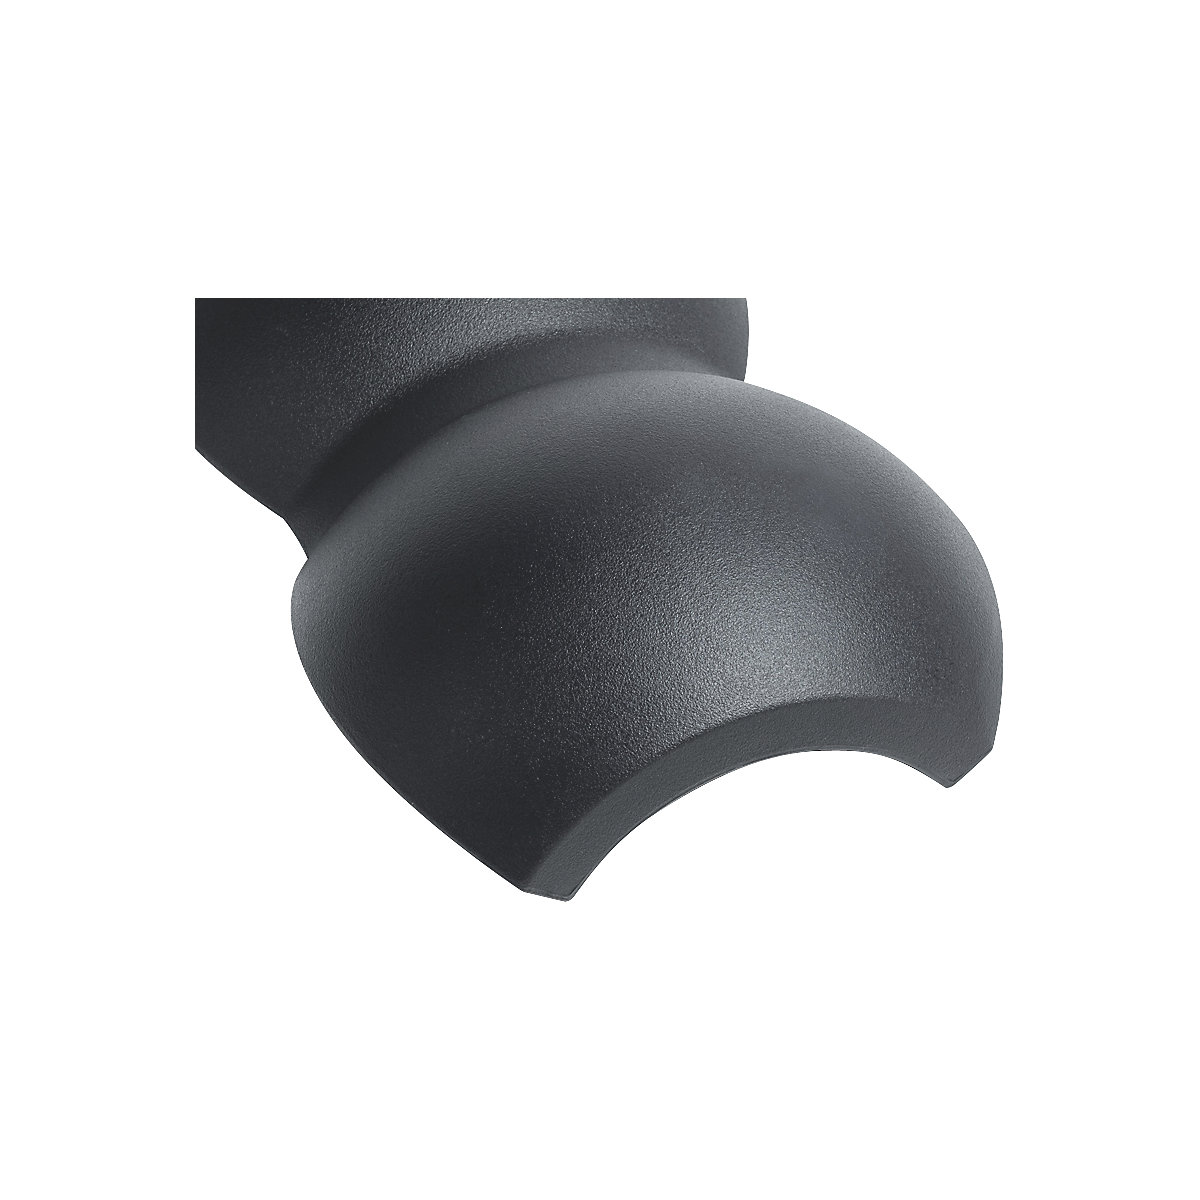 Kit d'extension switchROLL, double boule lisse – meychair ergonomics